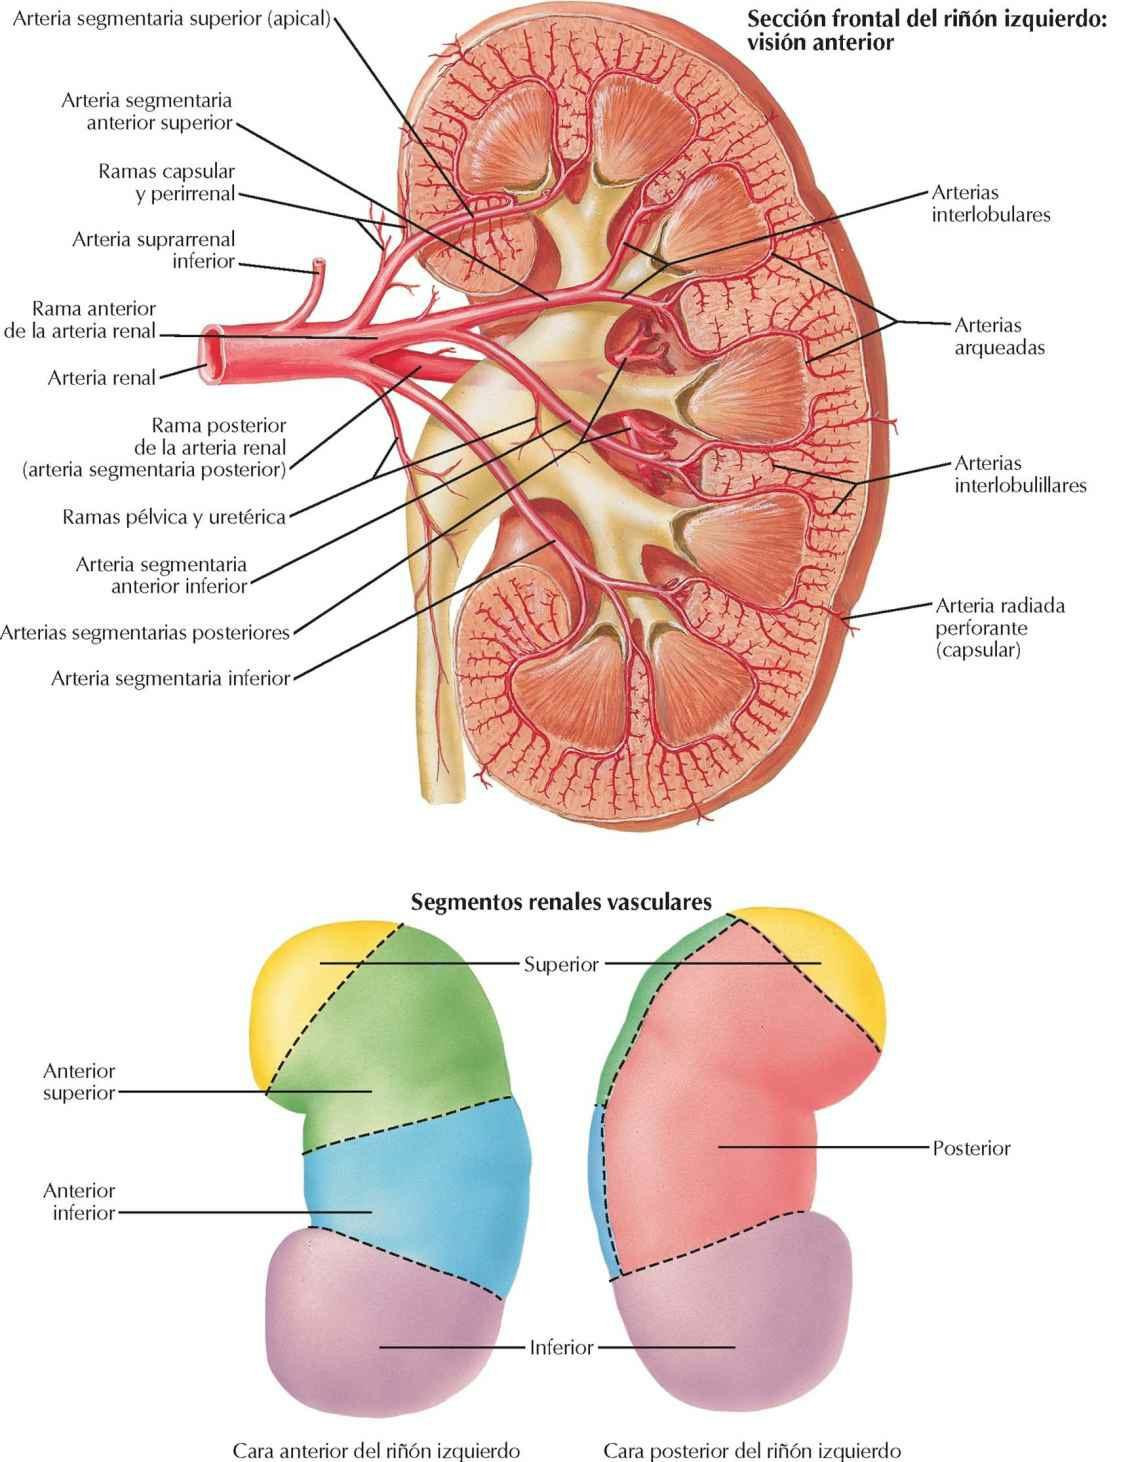 Arterias intrarrenales y segmentos del
riñón